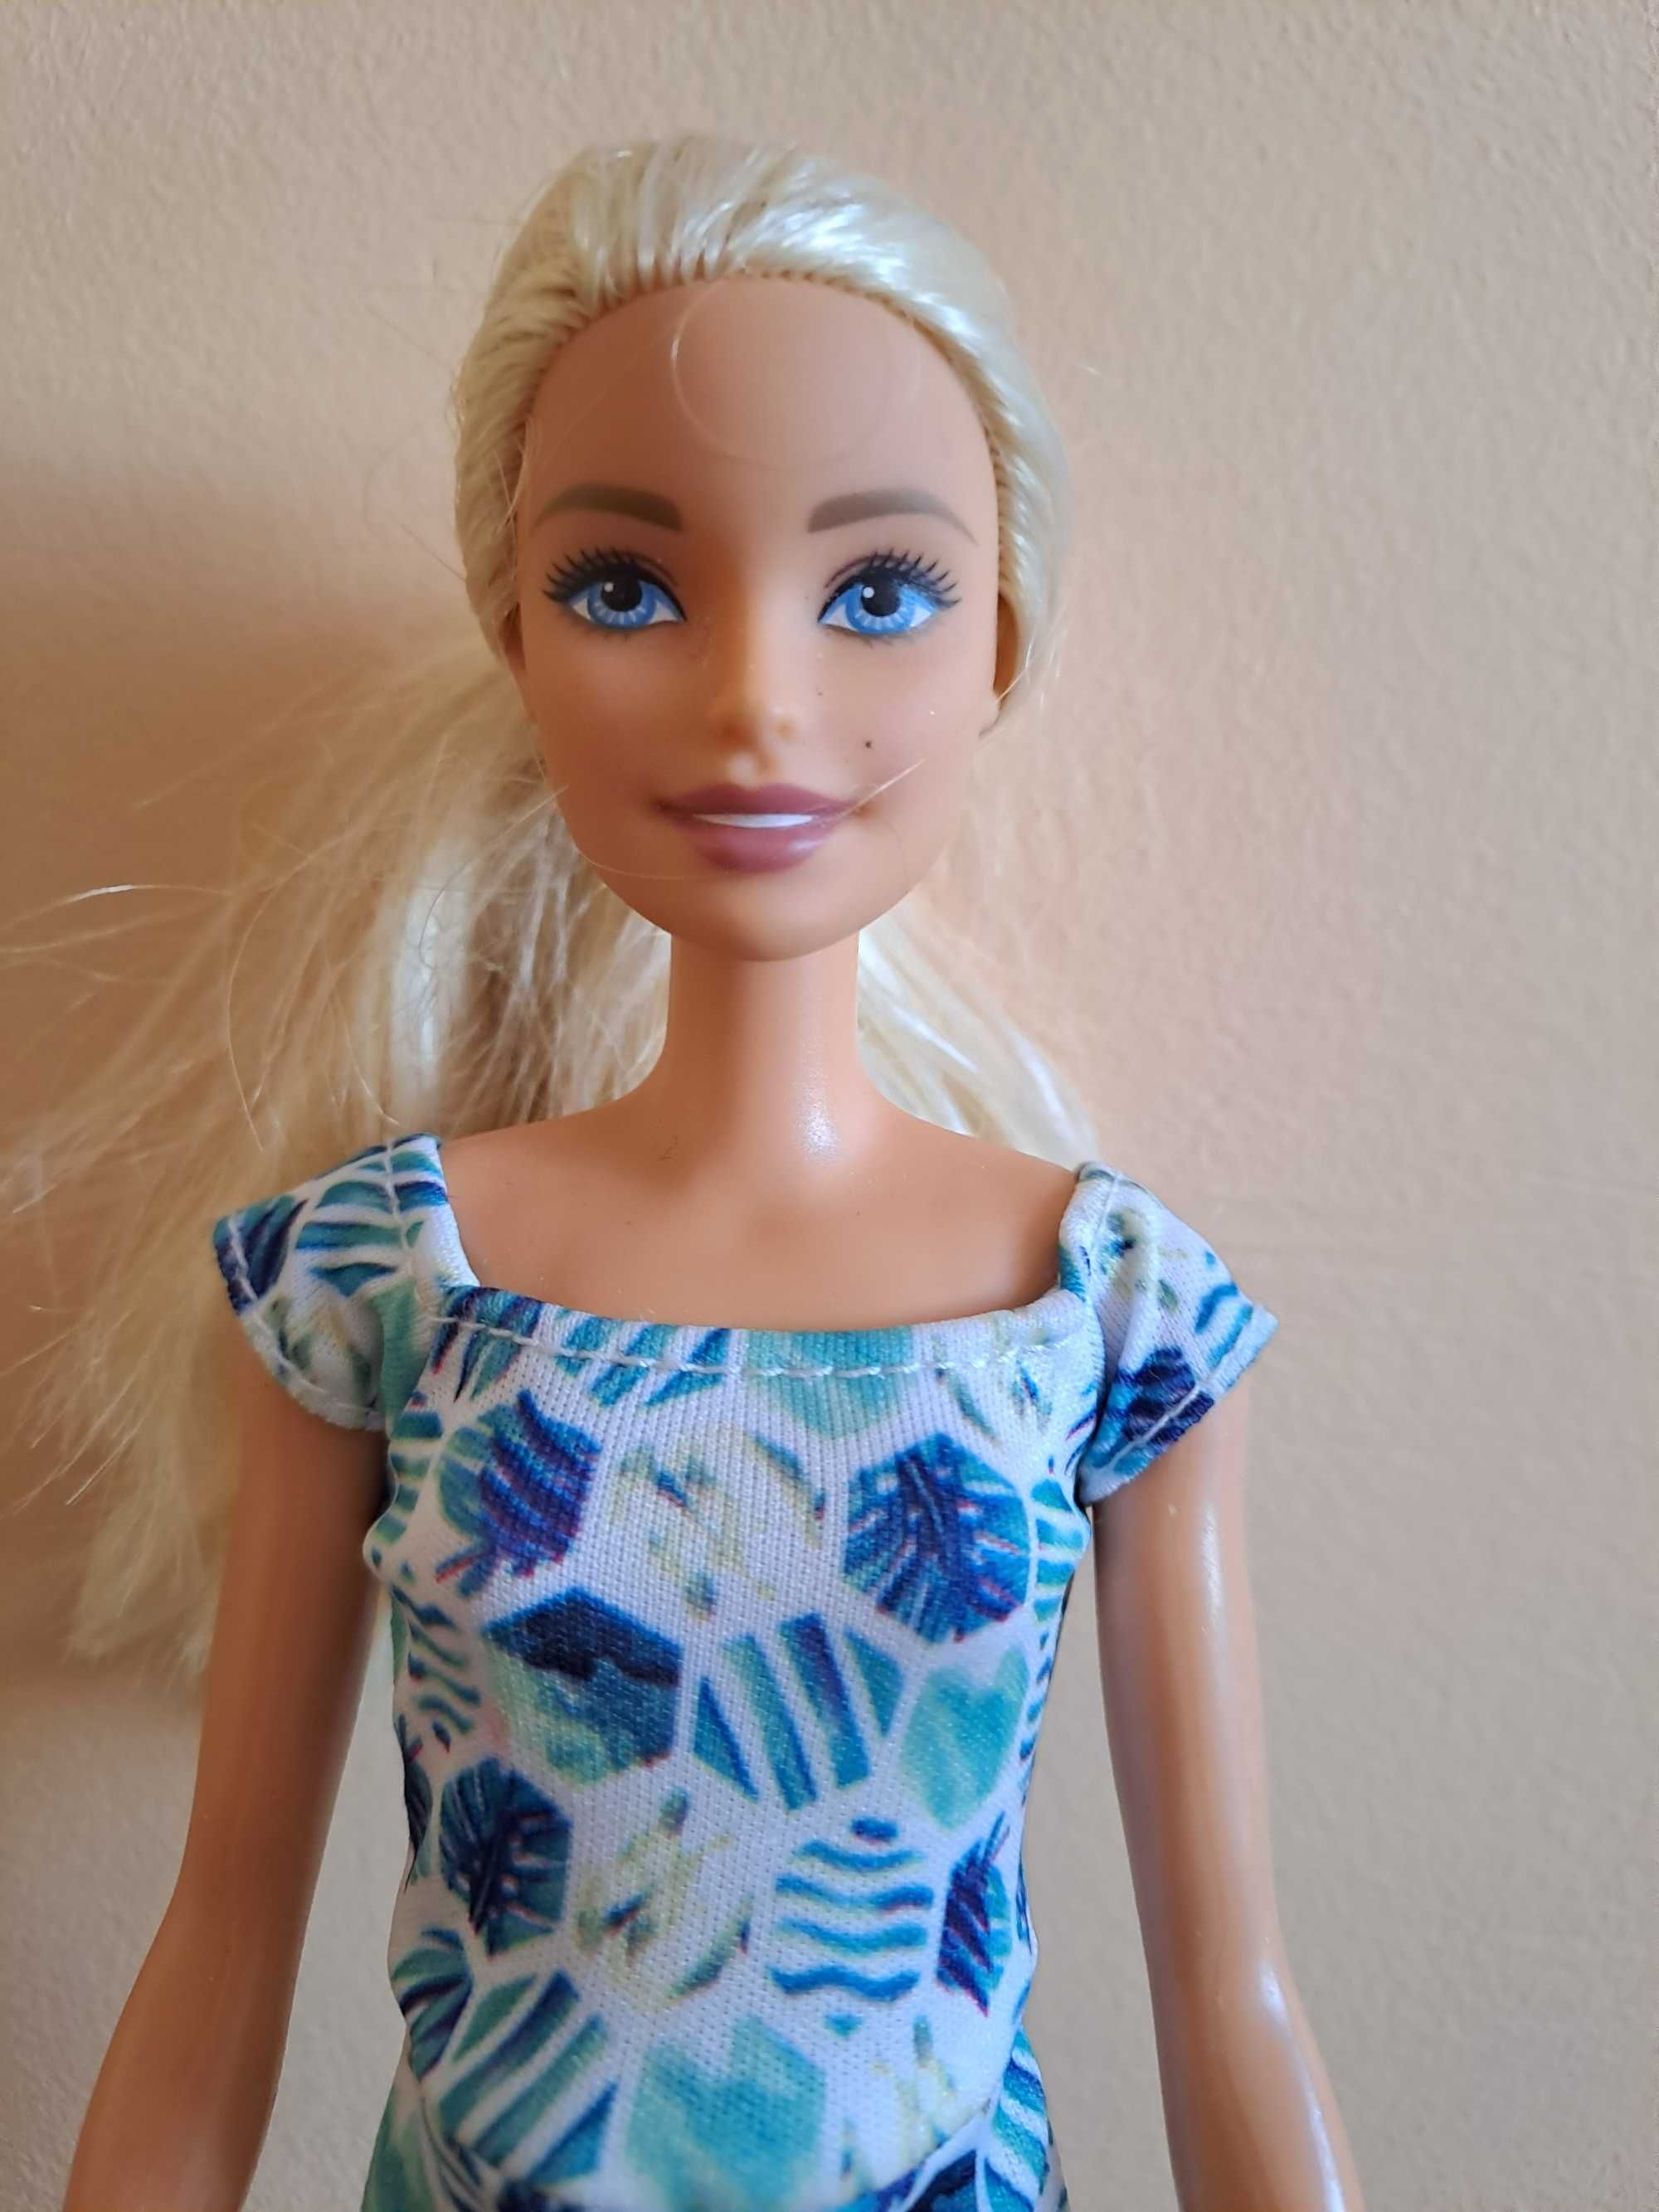 Lalka Barbie w letnim kombinezonie